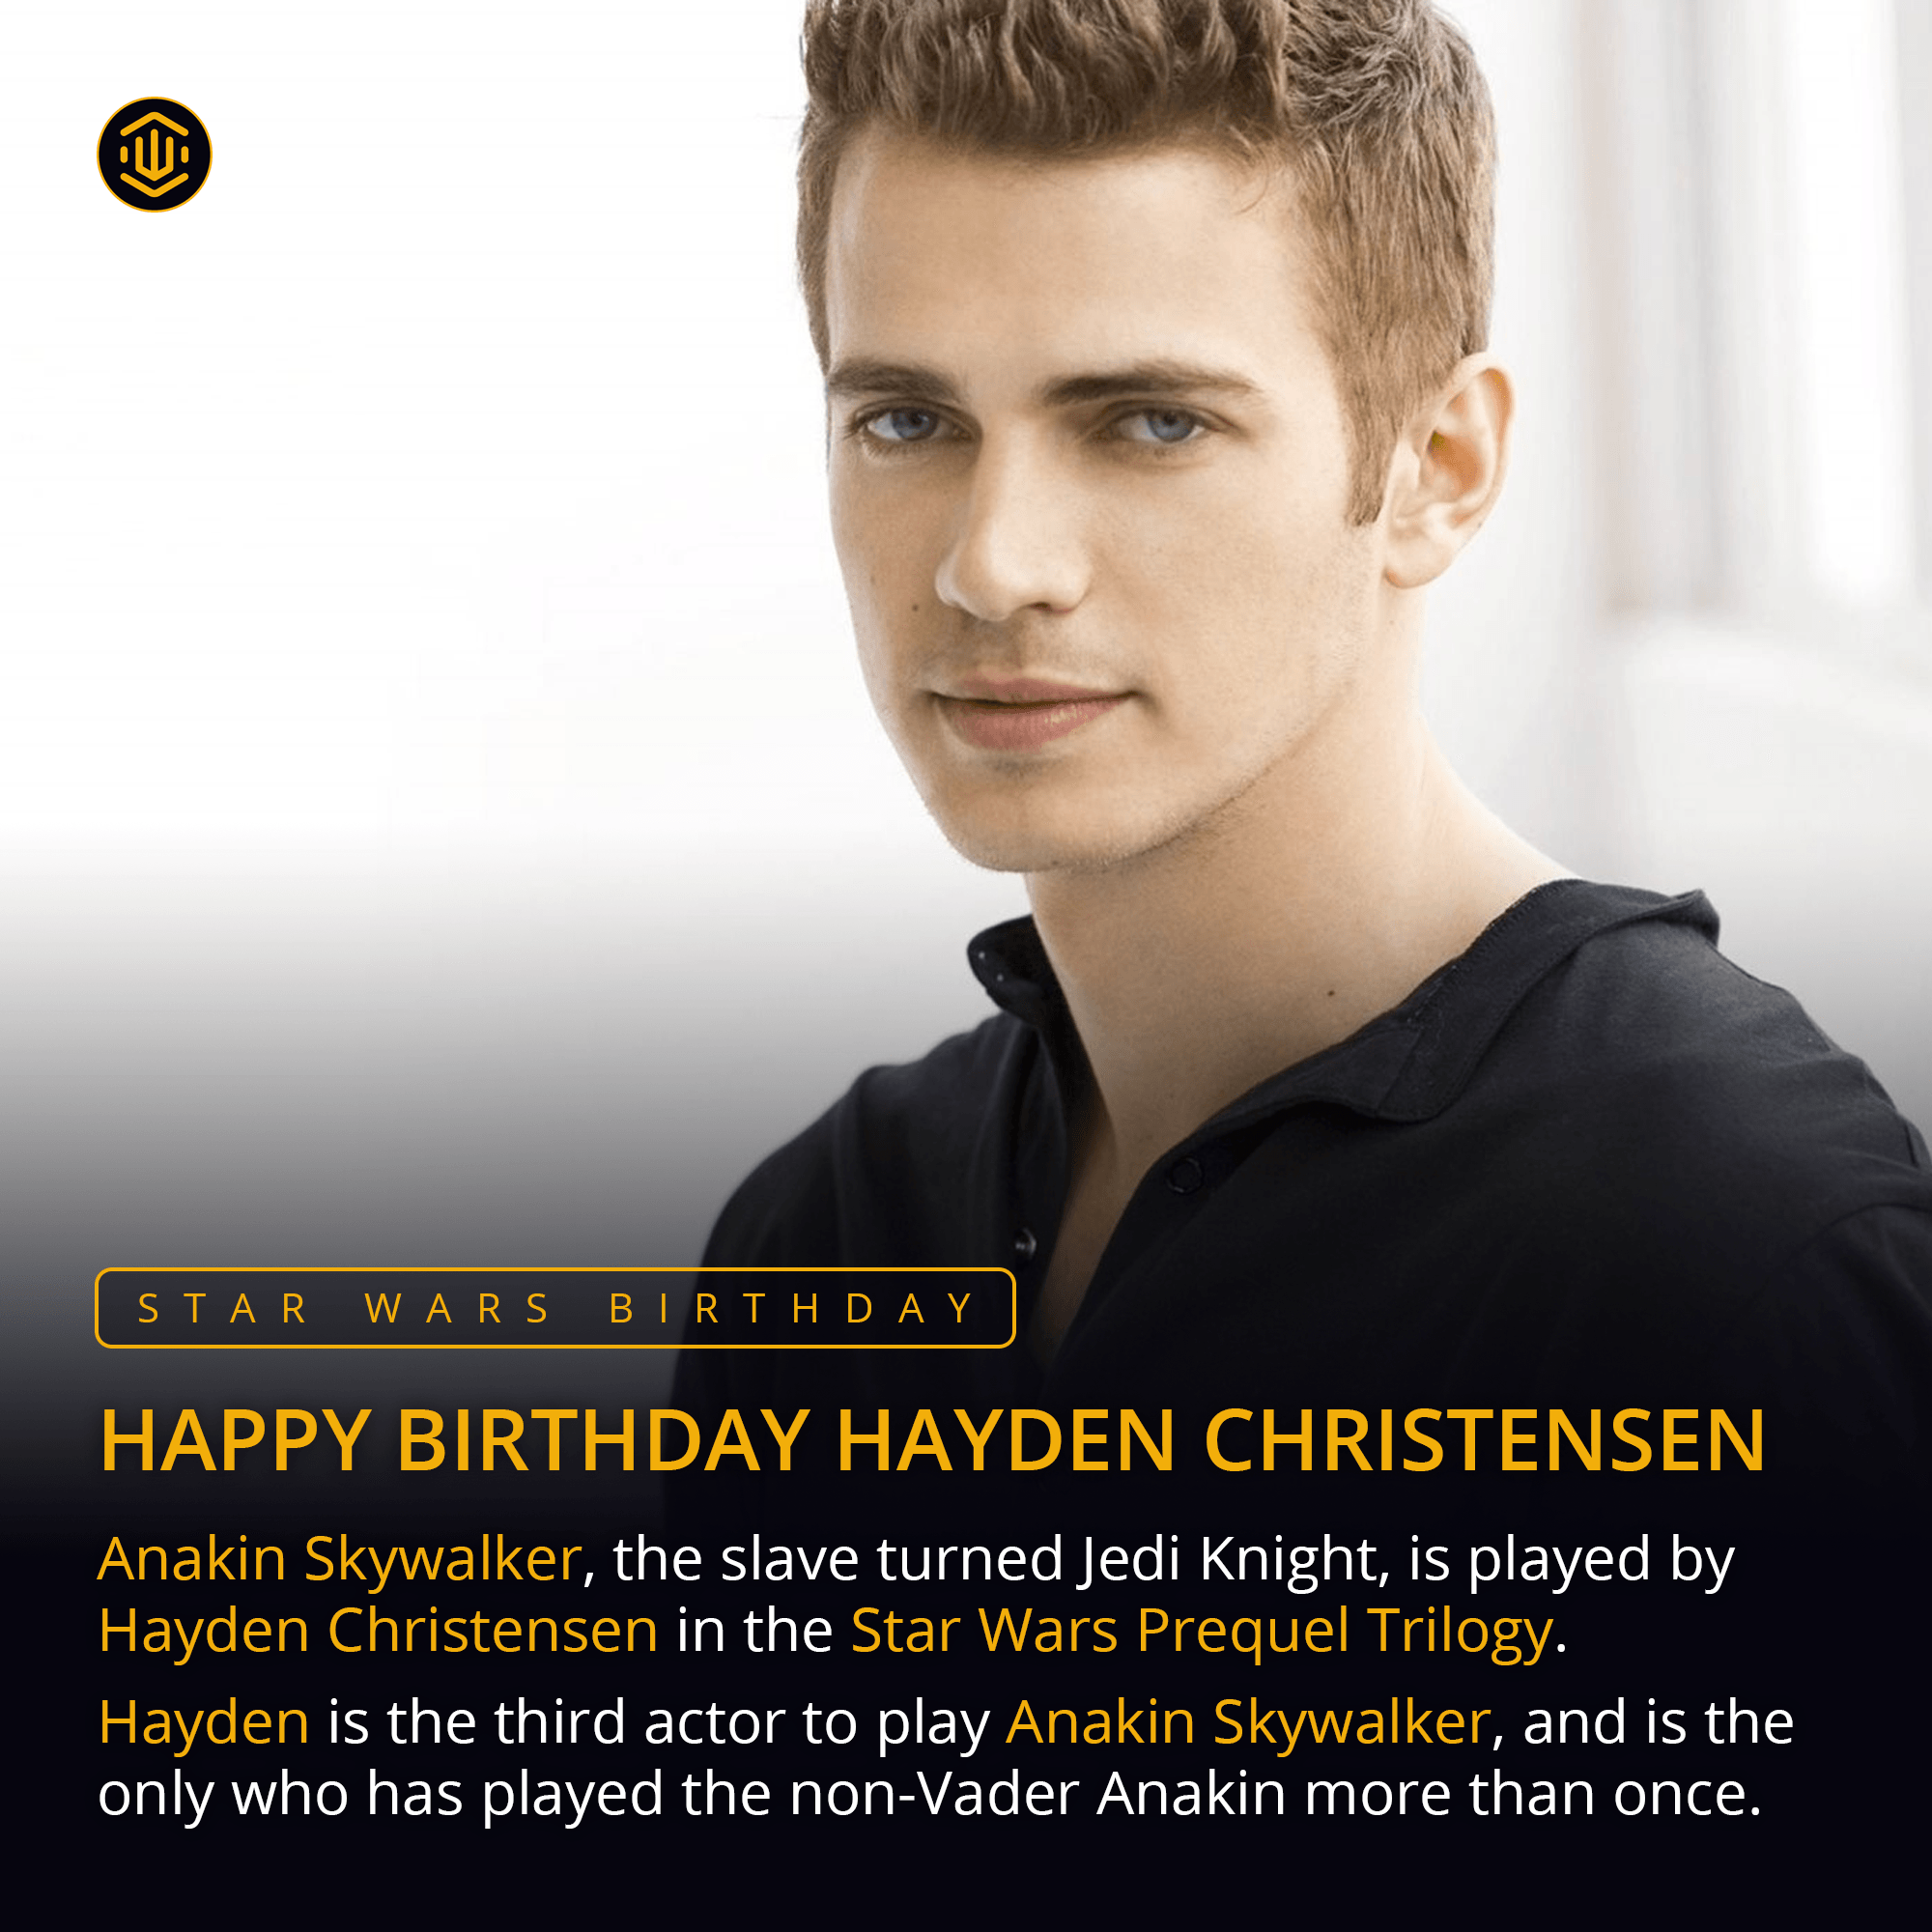 Happy Birthday to the Chosen One himself, Hayden Christensen! 